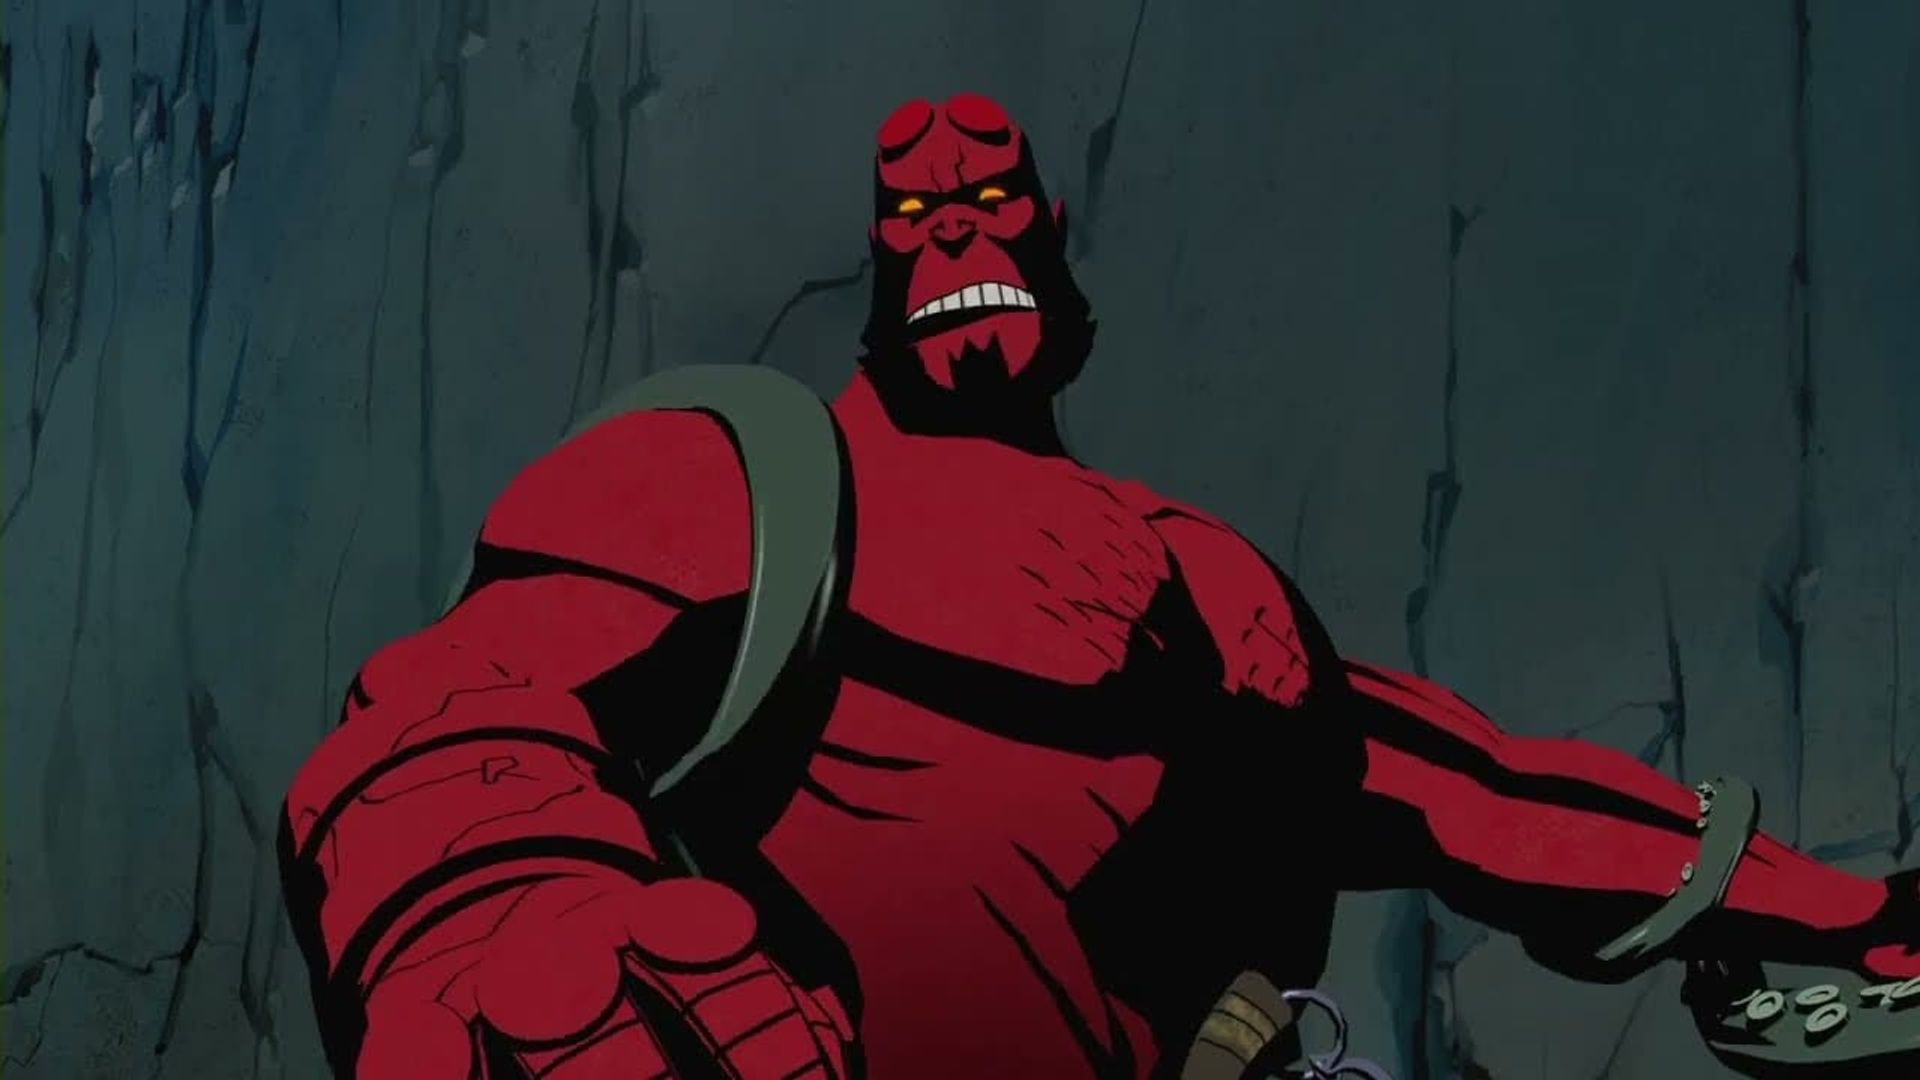 Hellboy Animated: The Dark Below background